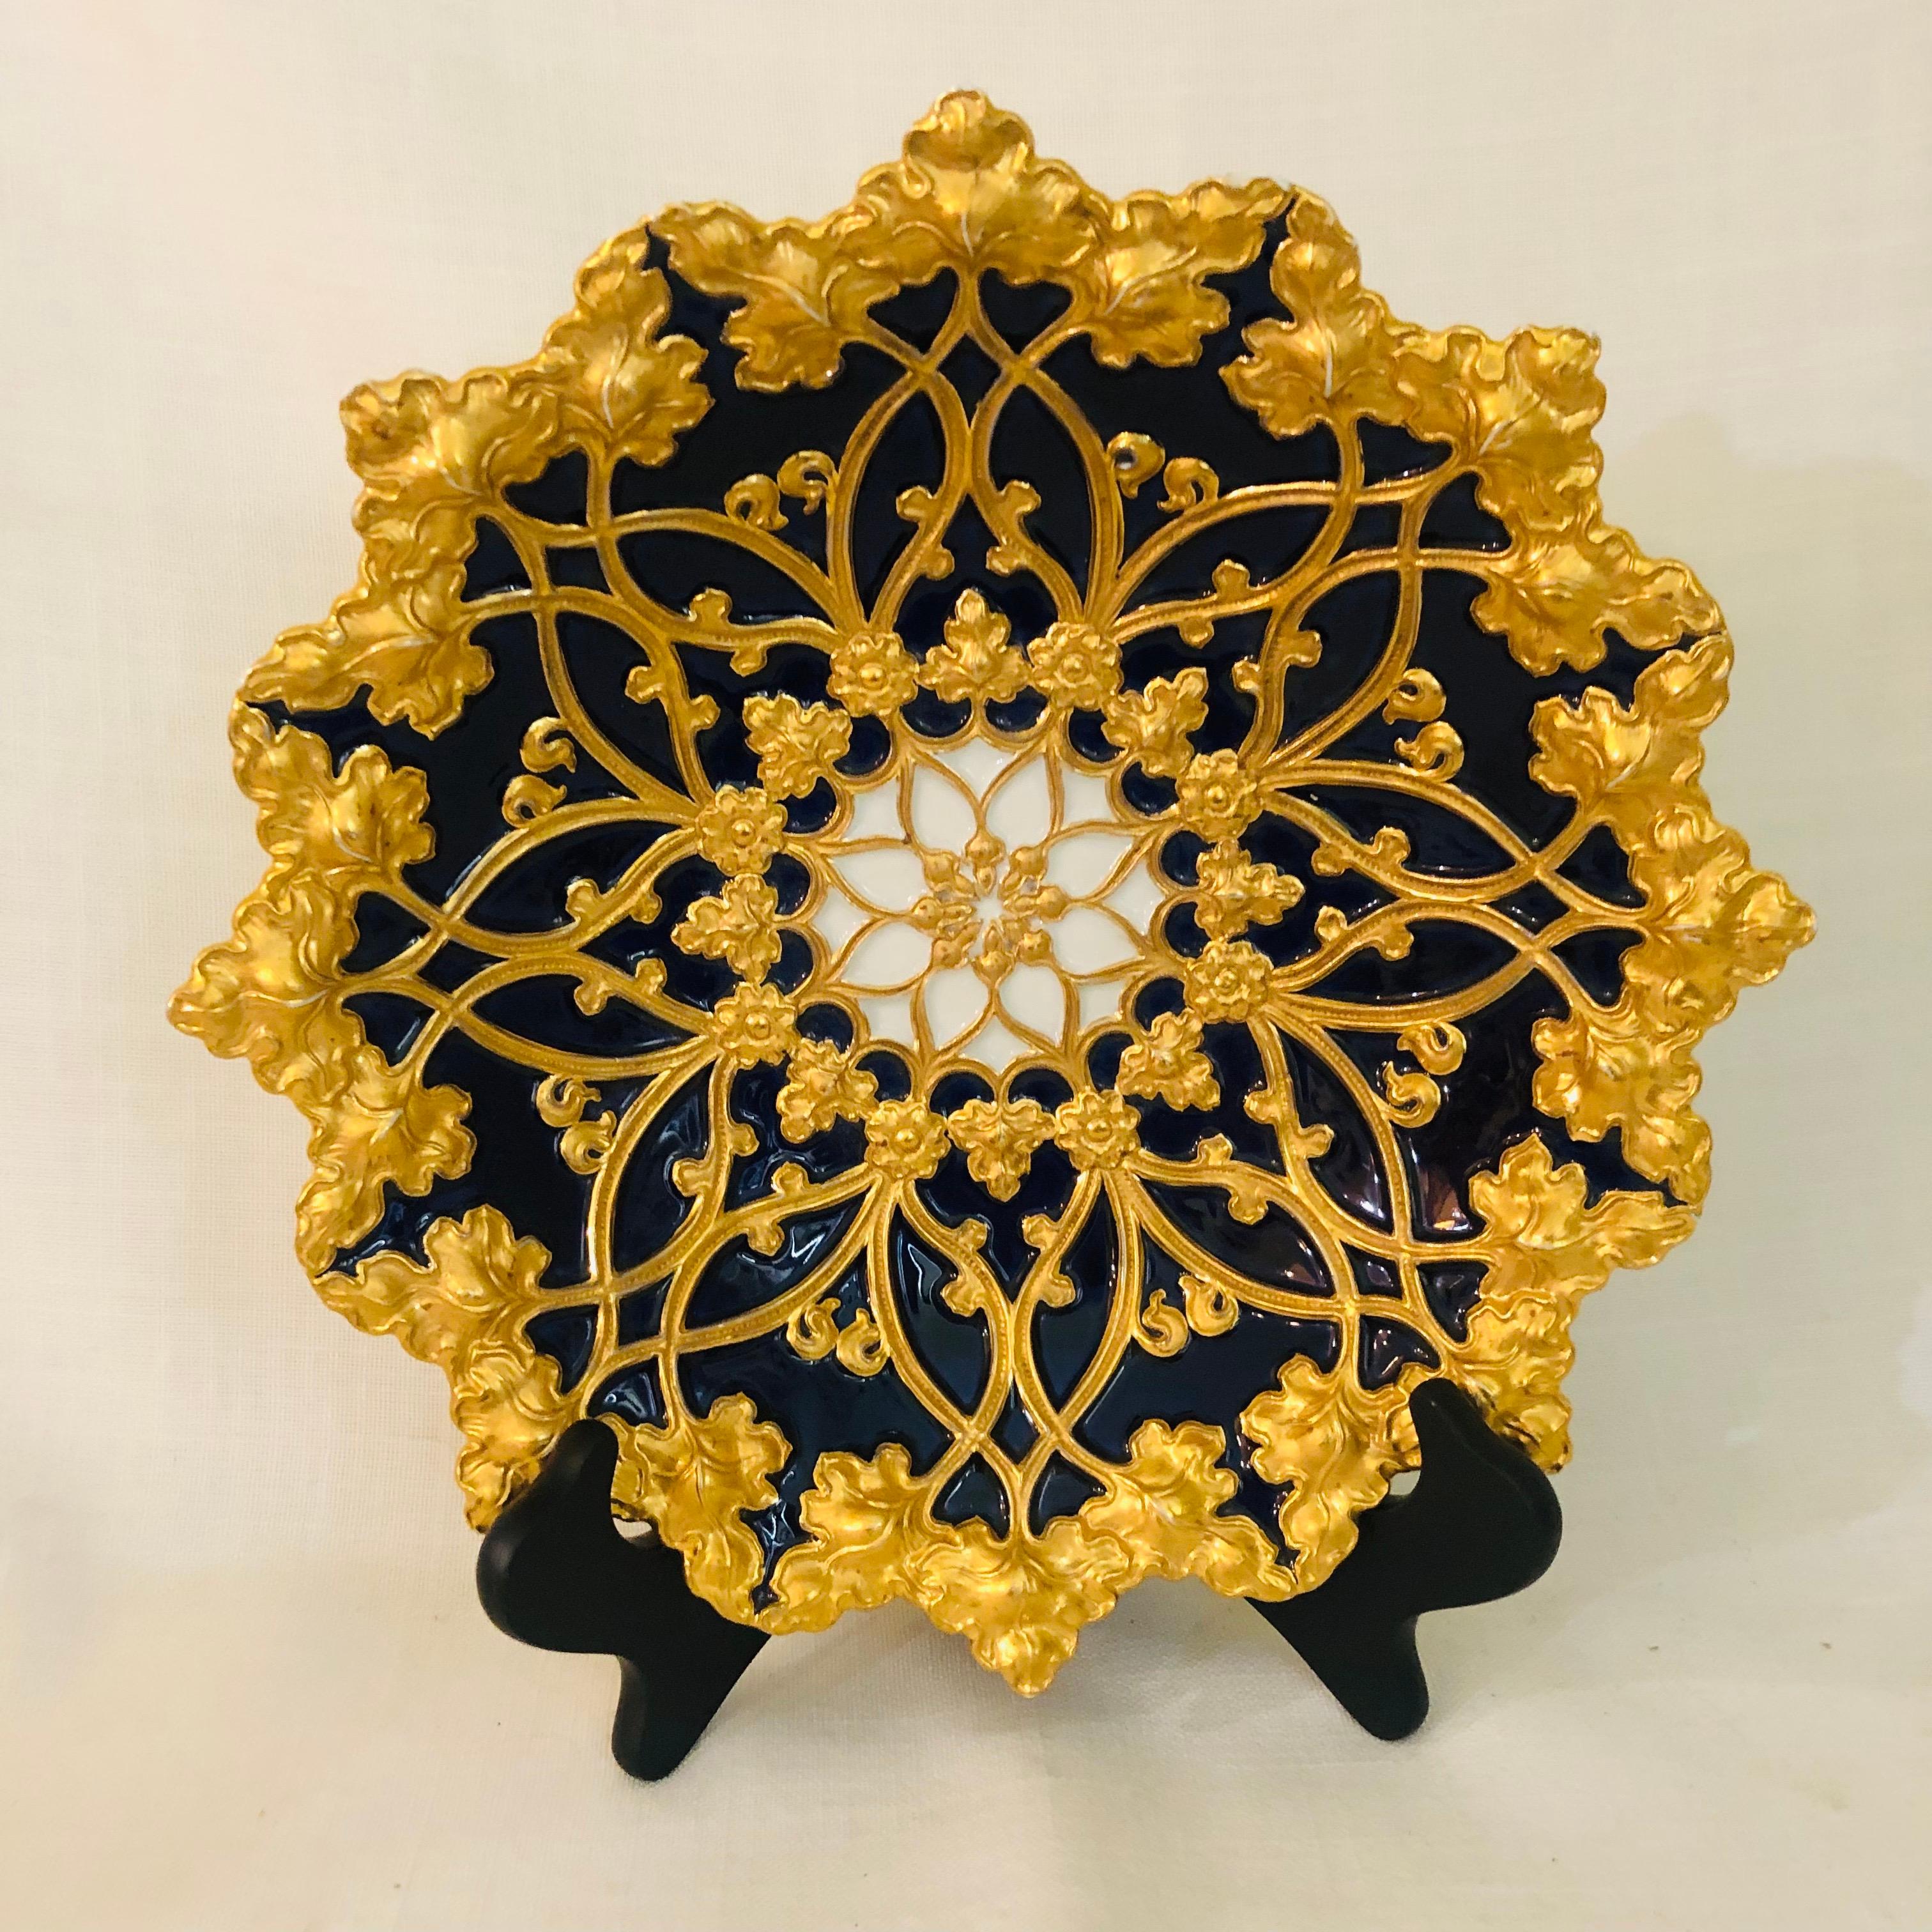 Meissener kobaltfarbener und goldener geriffelter Platzteller mit einer Umrandung aus goldenen Blättern aus den 1890er Jahren (Rokoko)